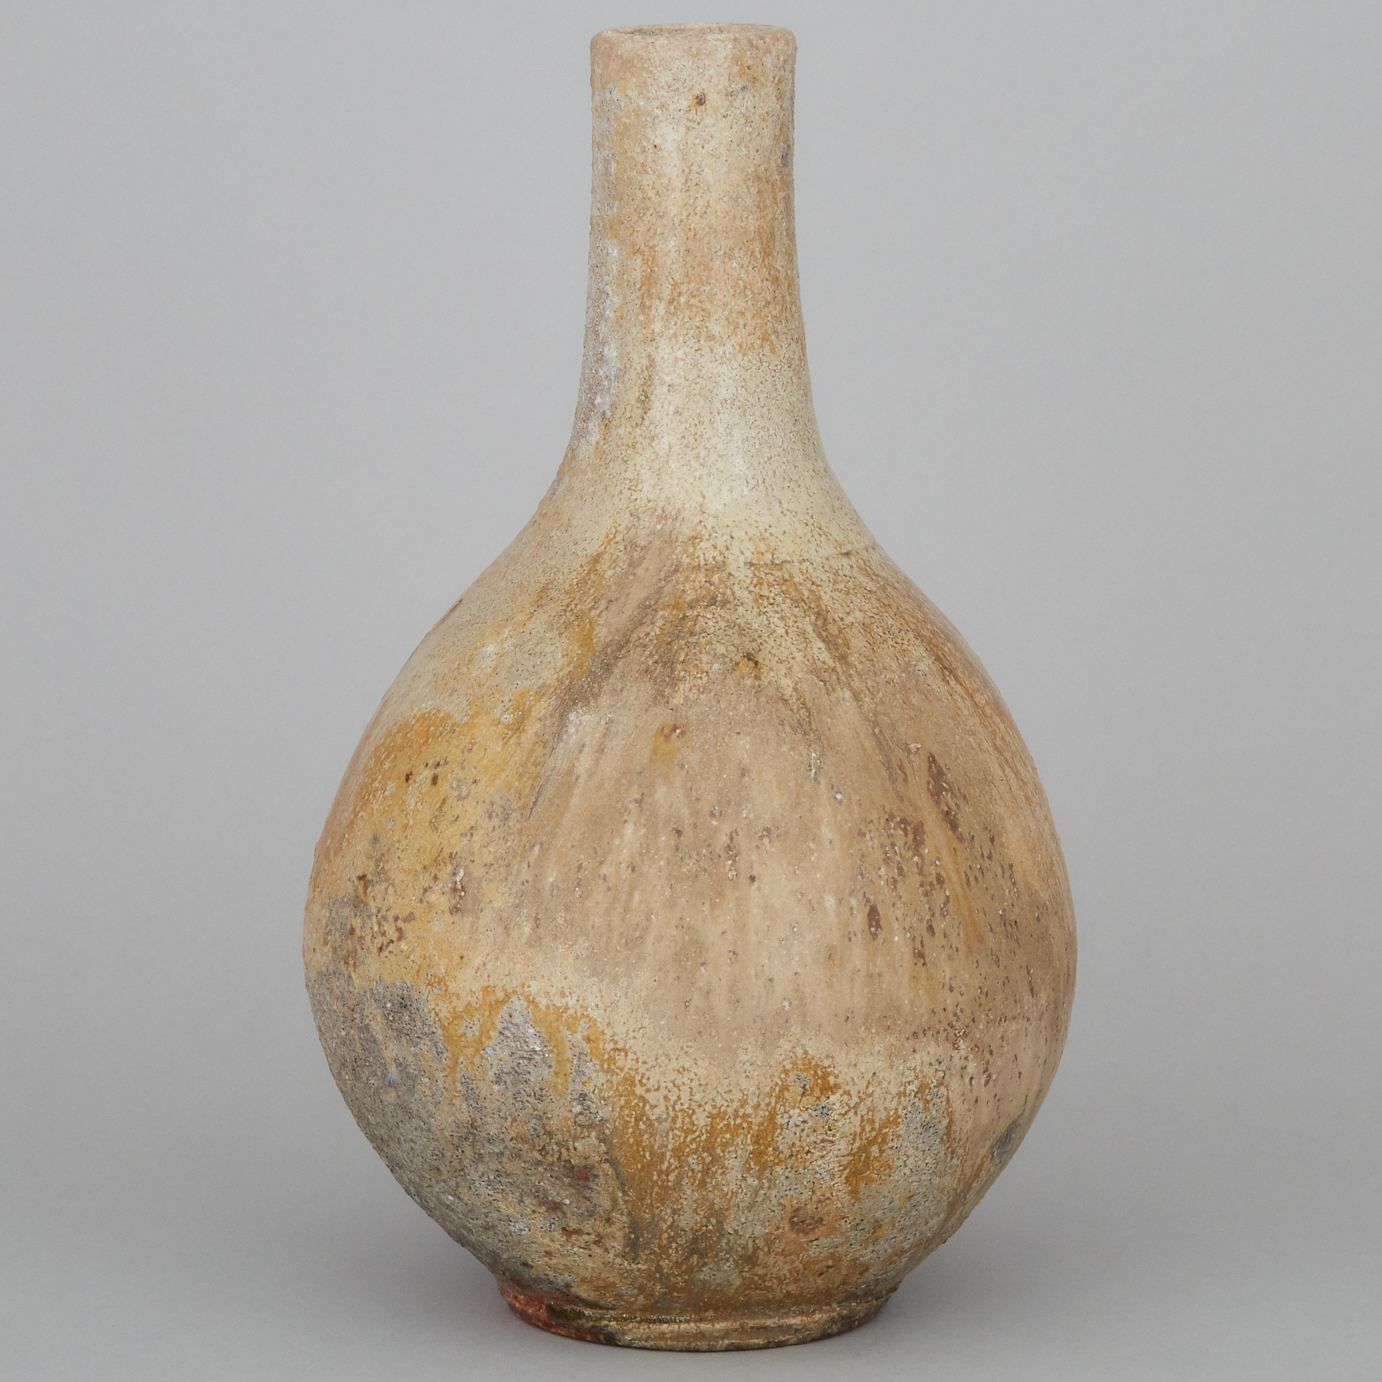 Robert Archambeau (Canadian, b.1933), Stoneware Glazed Vase, c.1990